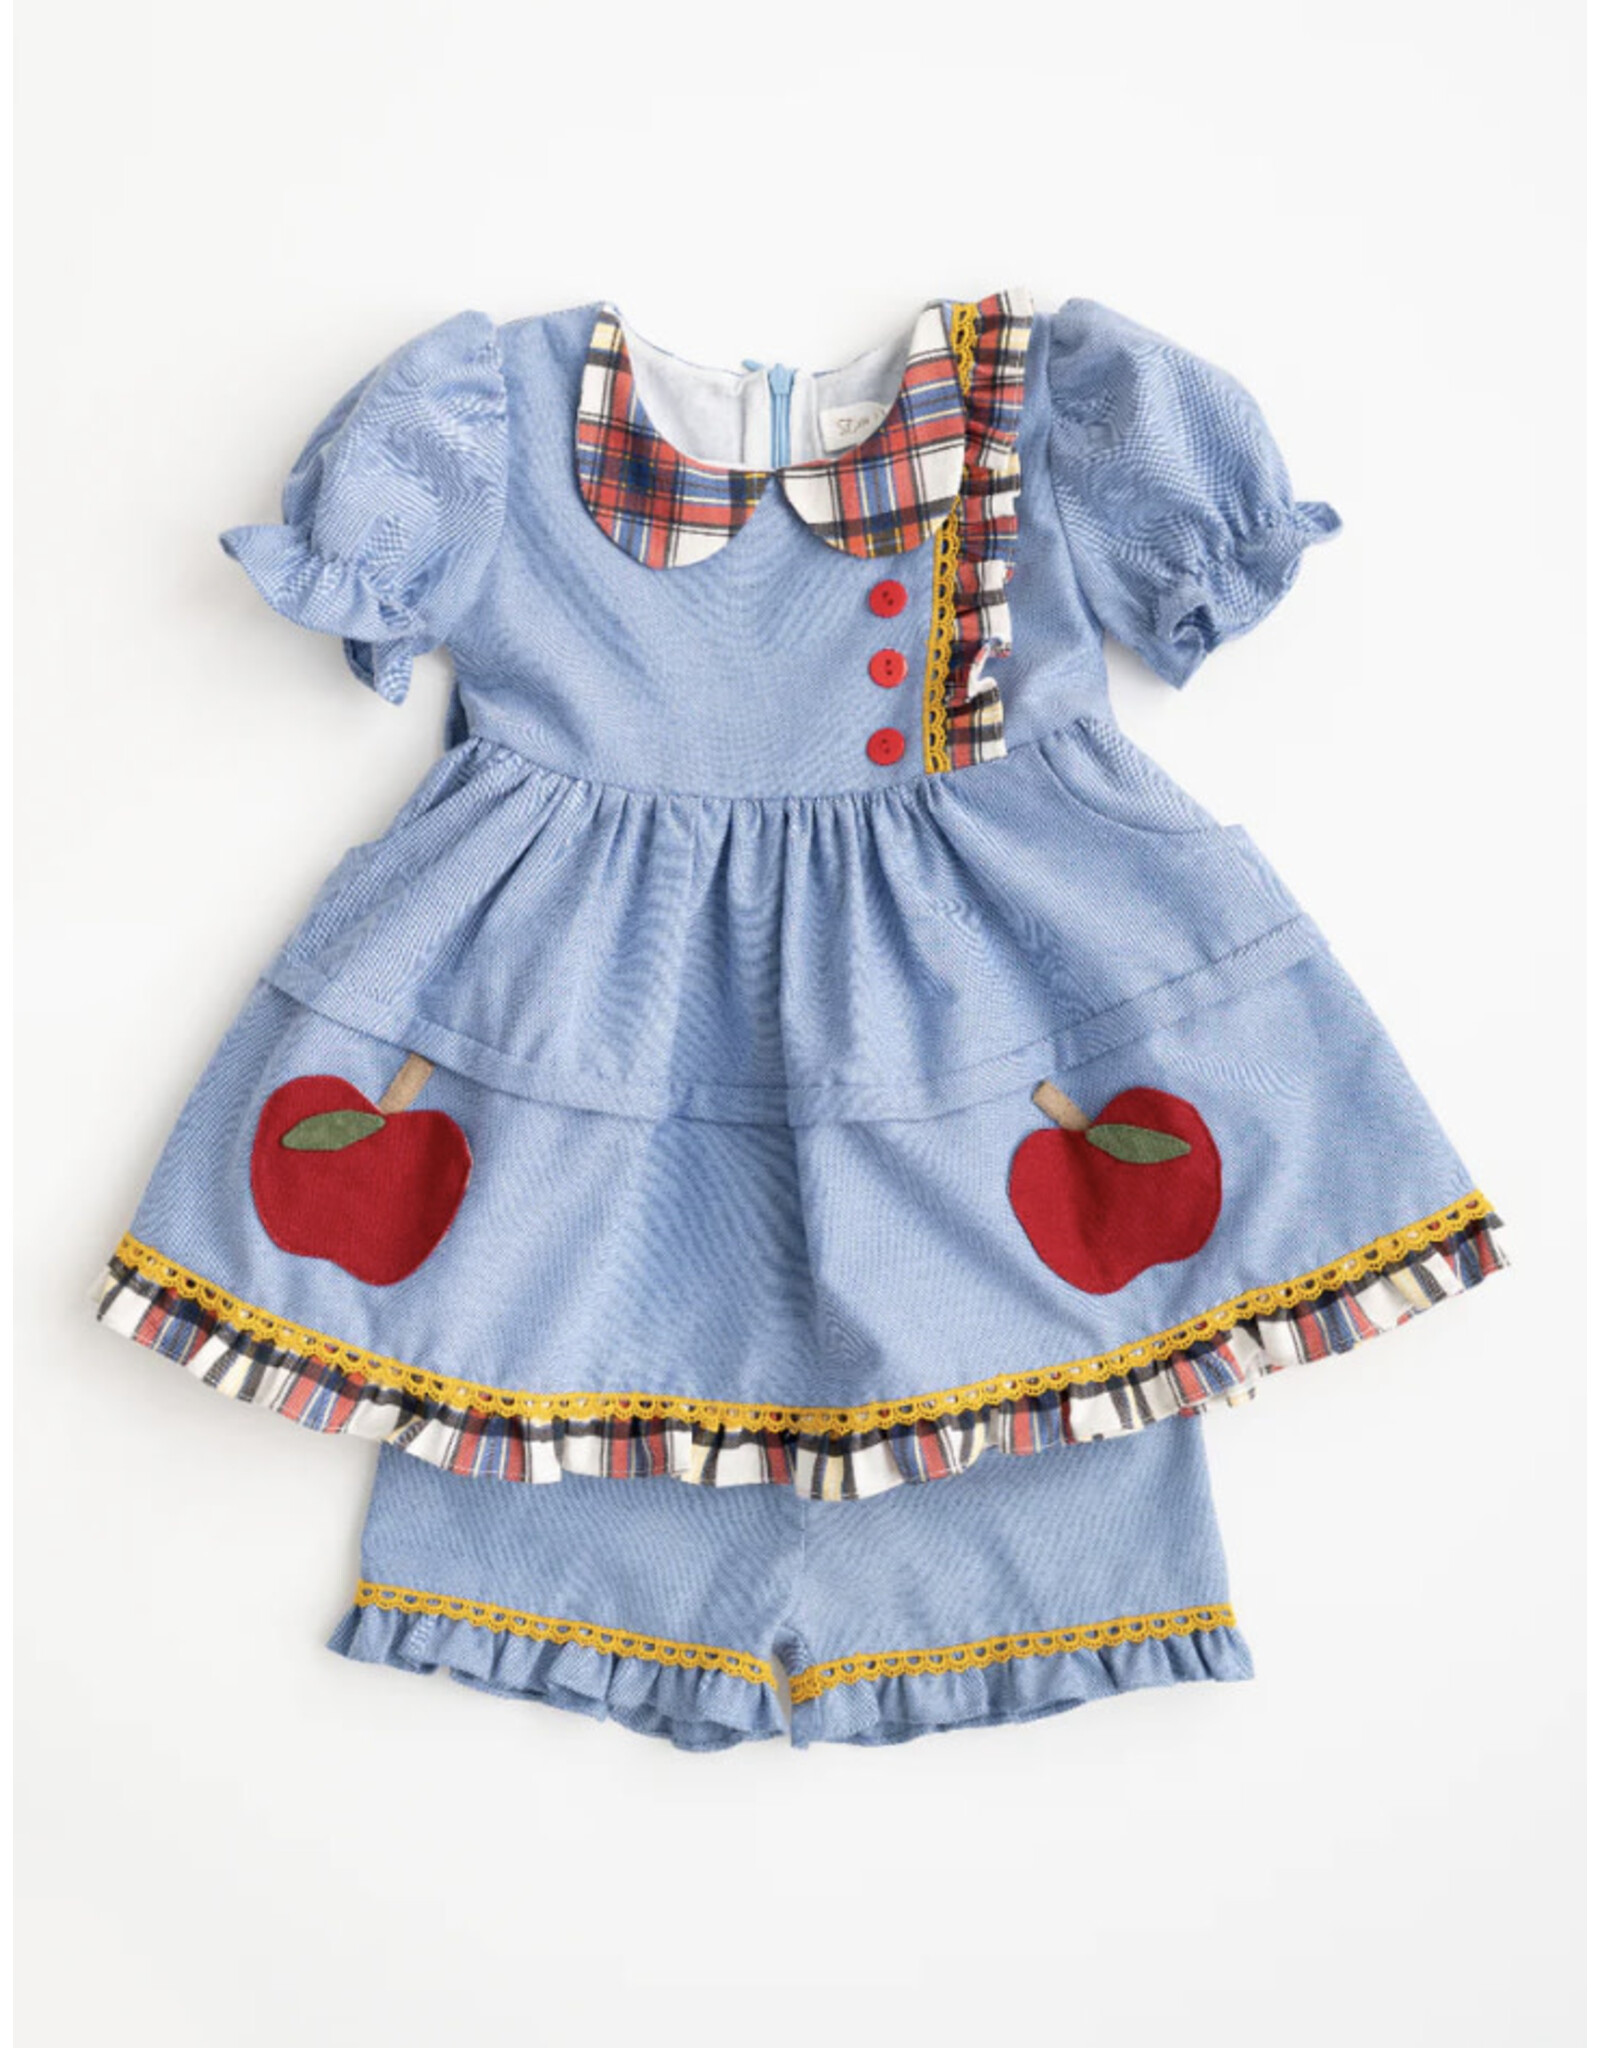 Evie's Closet Evie’s Closet- Apple Plaid Tunic Dress